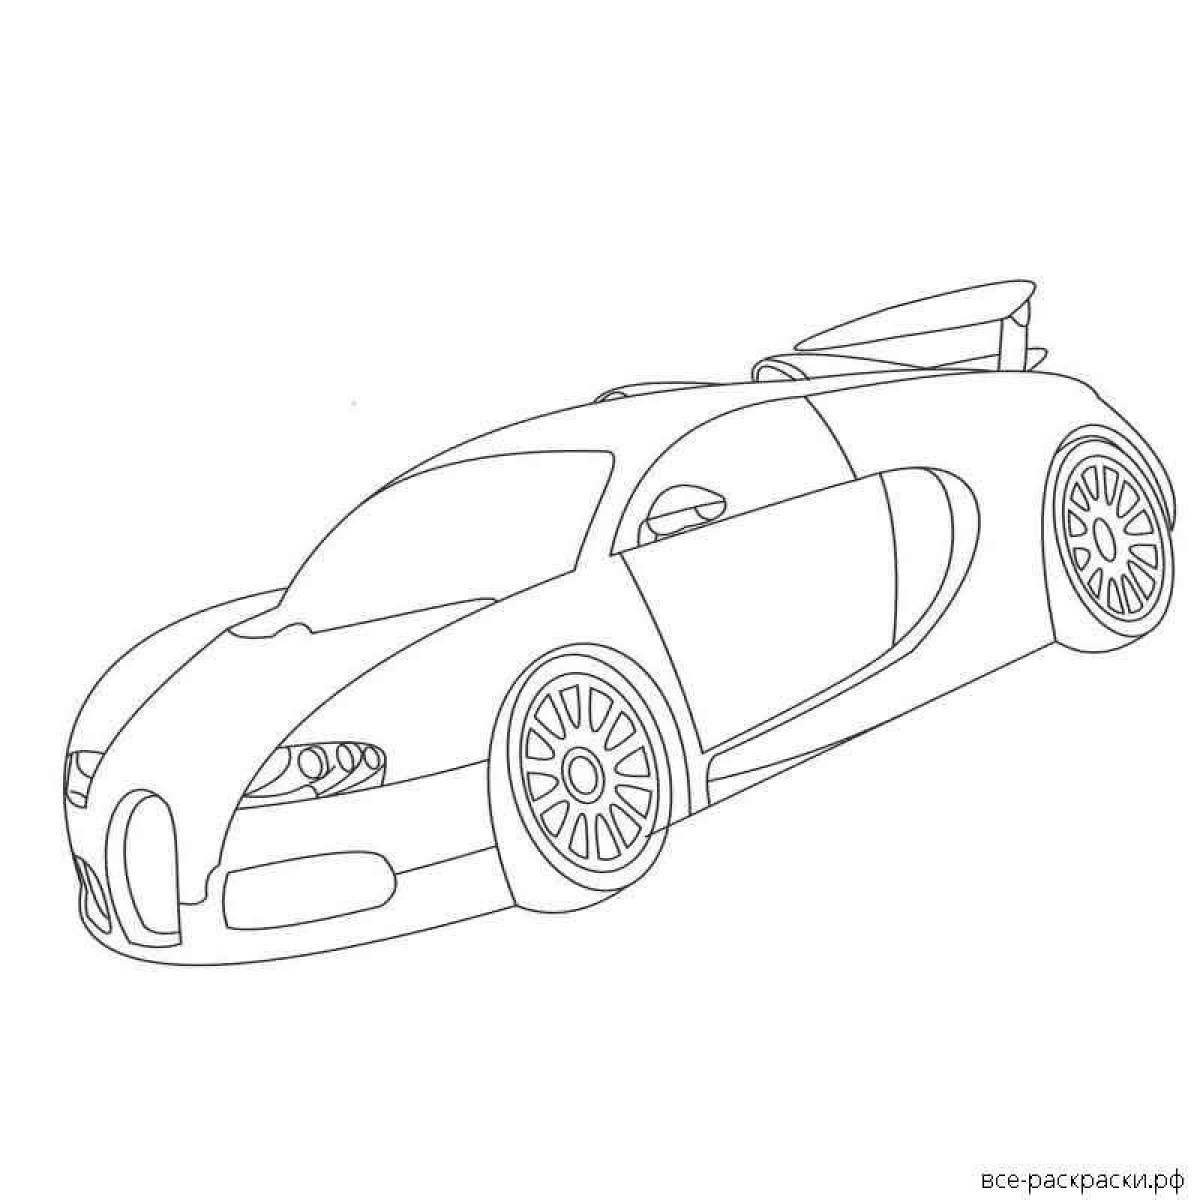 Majestic bugatti veyron coloring page